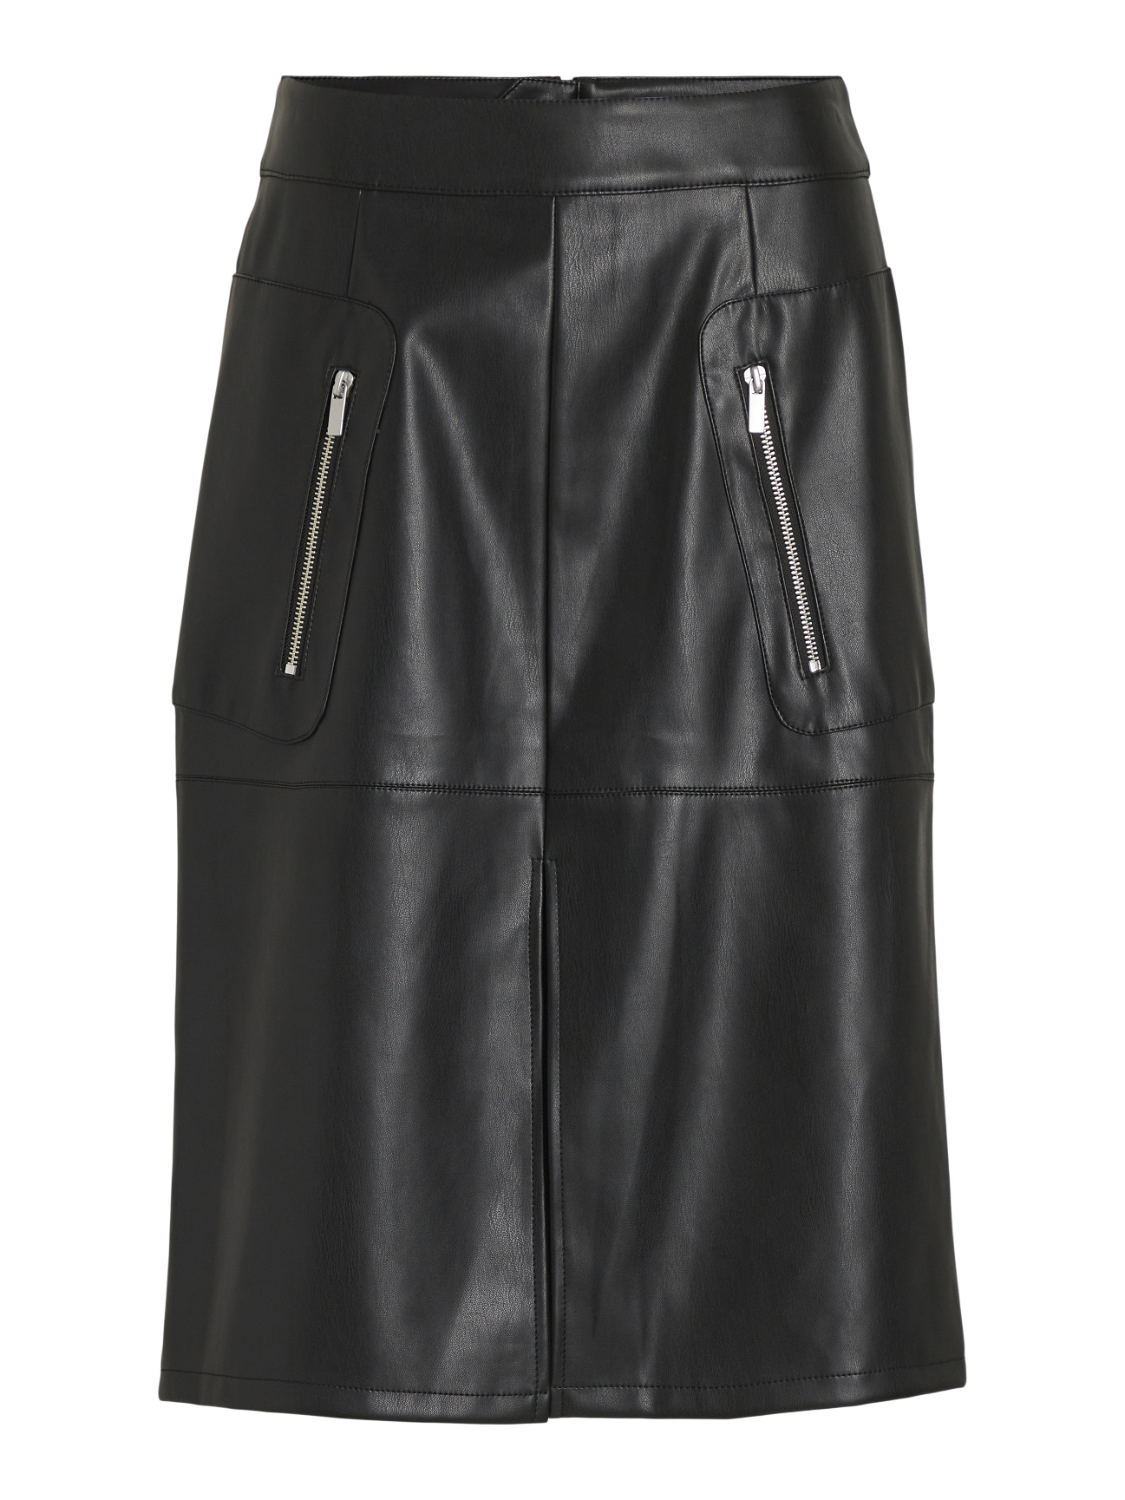 VIPEN Skirt - Black